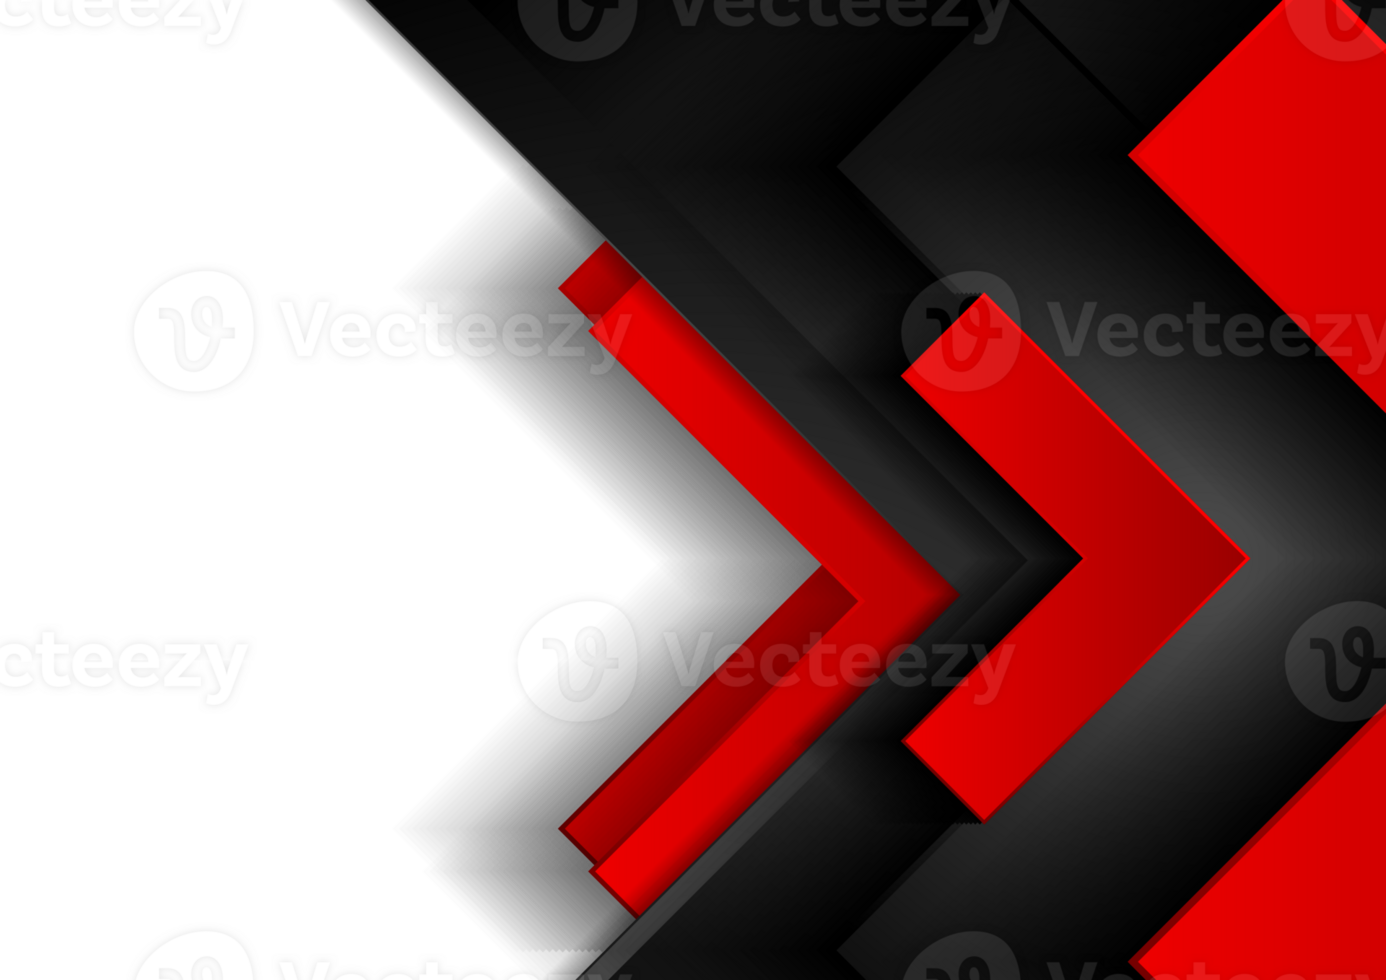 rood en zwart tech abstract achtergrond met pijlen png